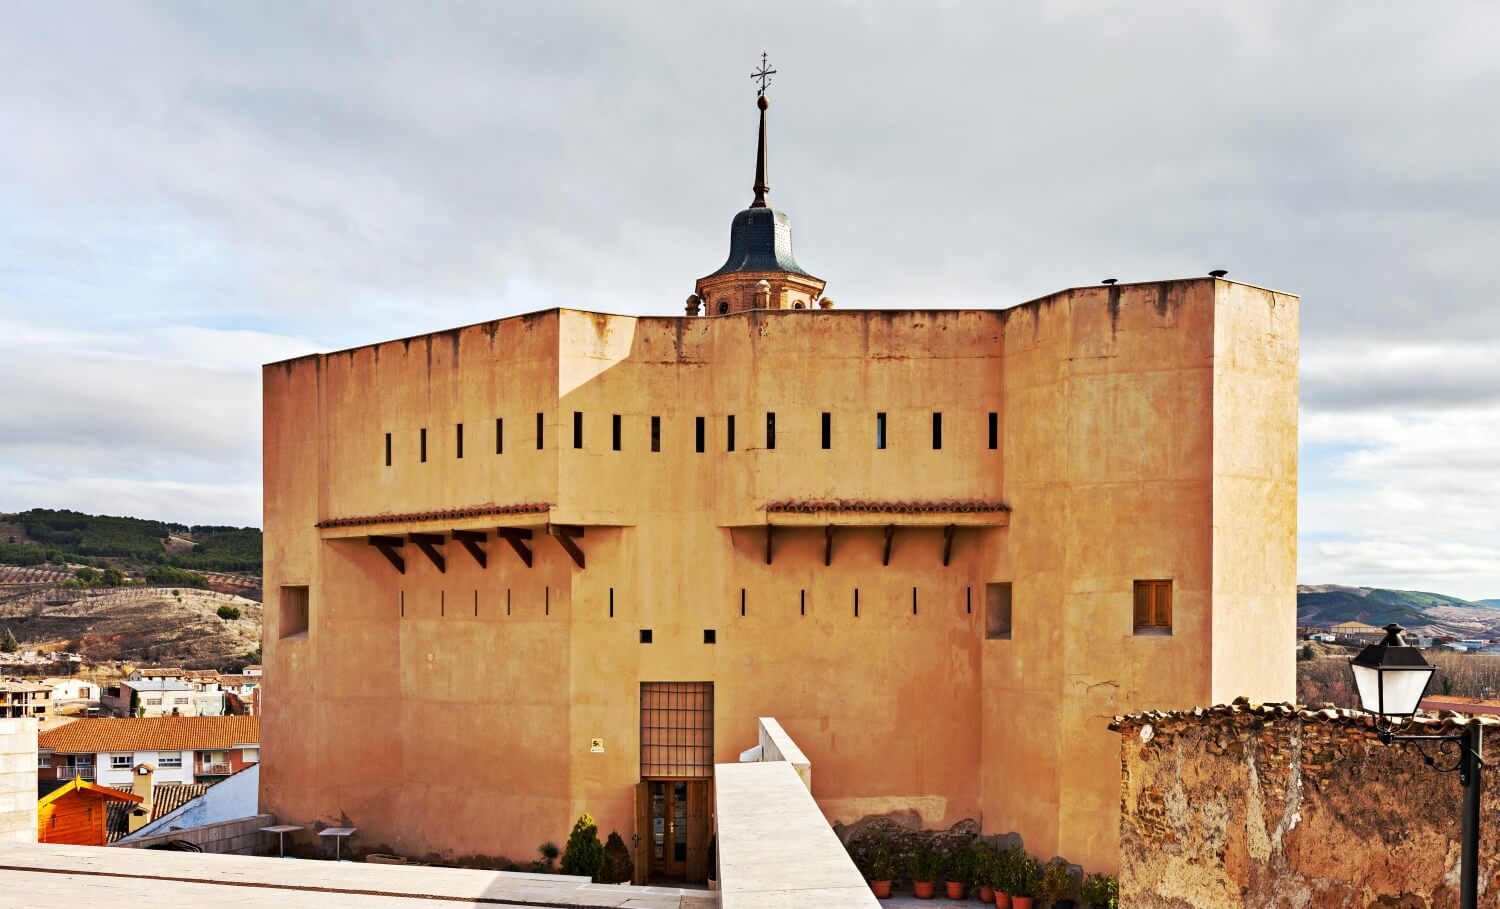 Castillo de Ateca